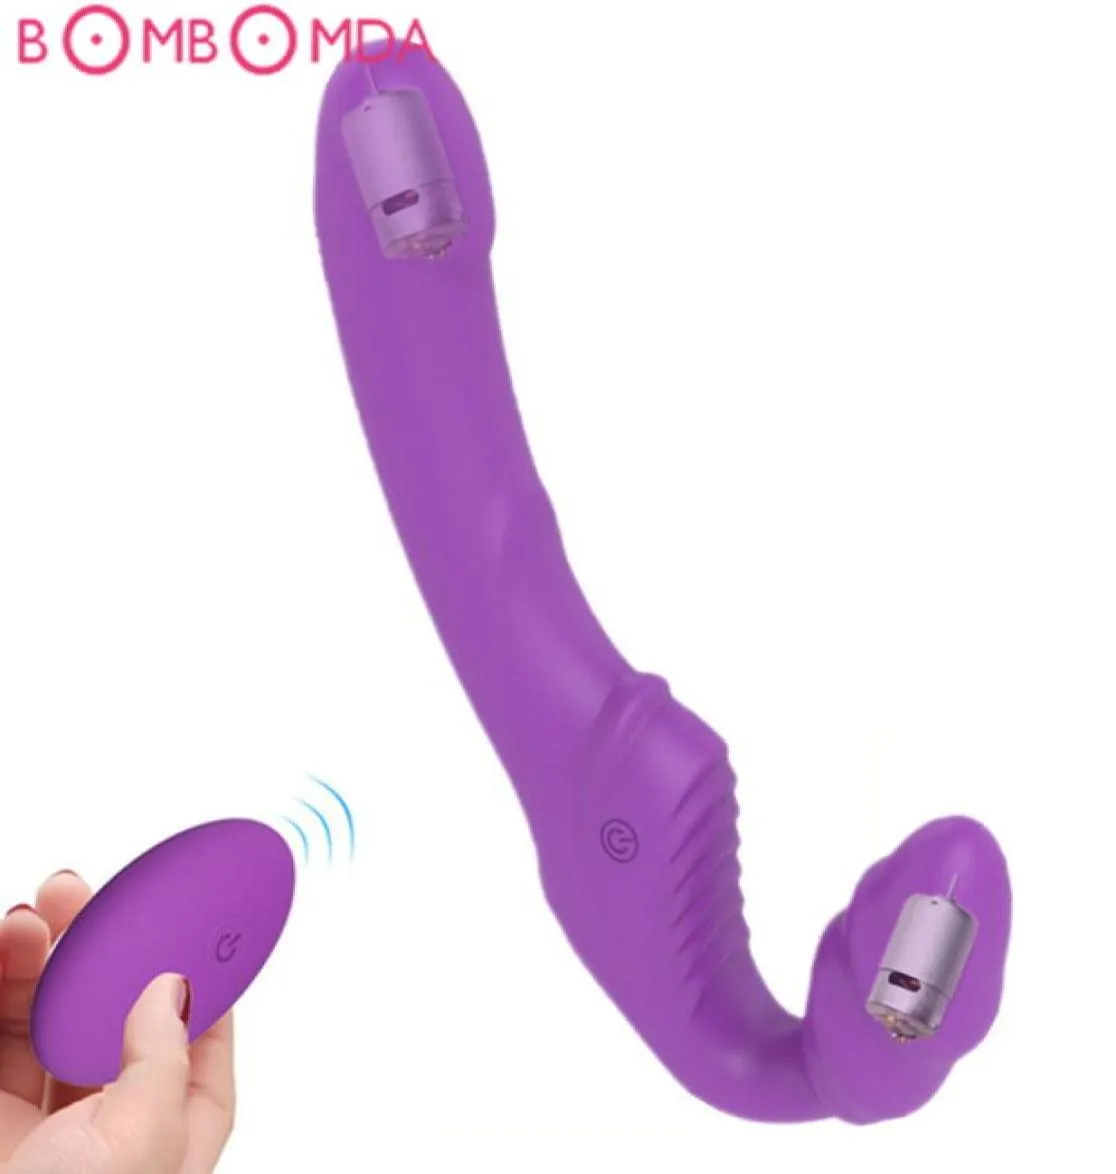 Wibrator dildo bez ramiączek dla par kobiet podwójnie wibrujący g plamka dla dorosłych zabawka seksu dla lesbijskiego zdalnego sterowania wibratorem USB Y8380555